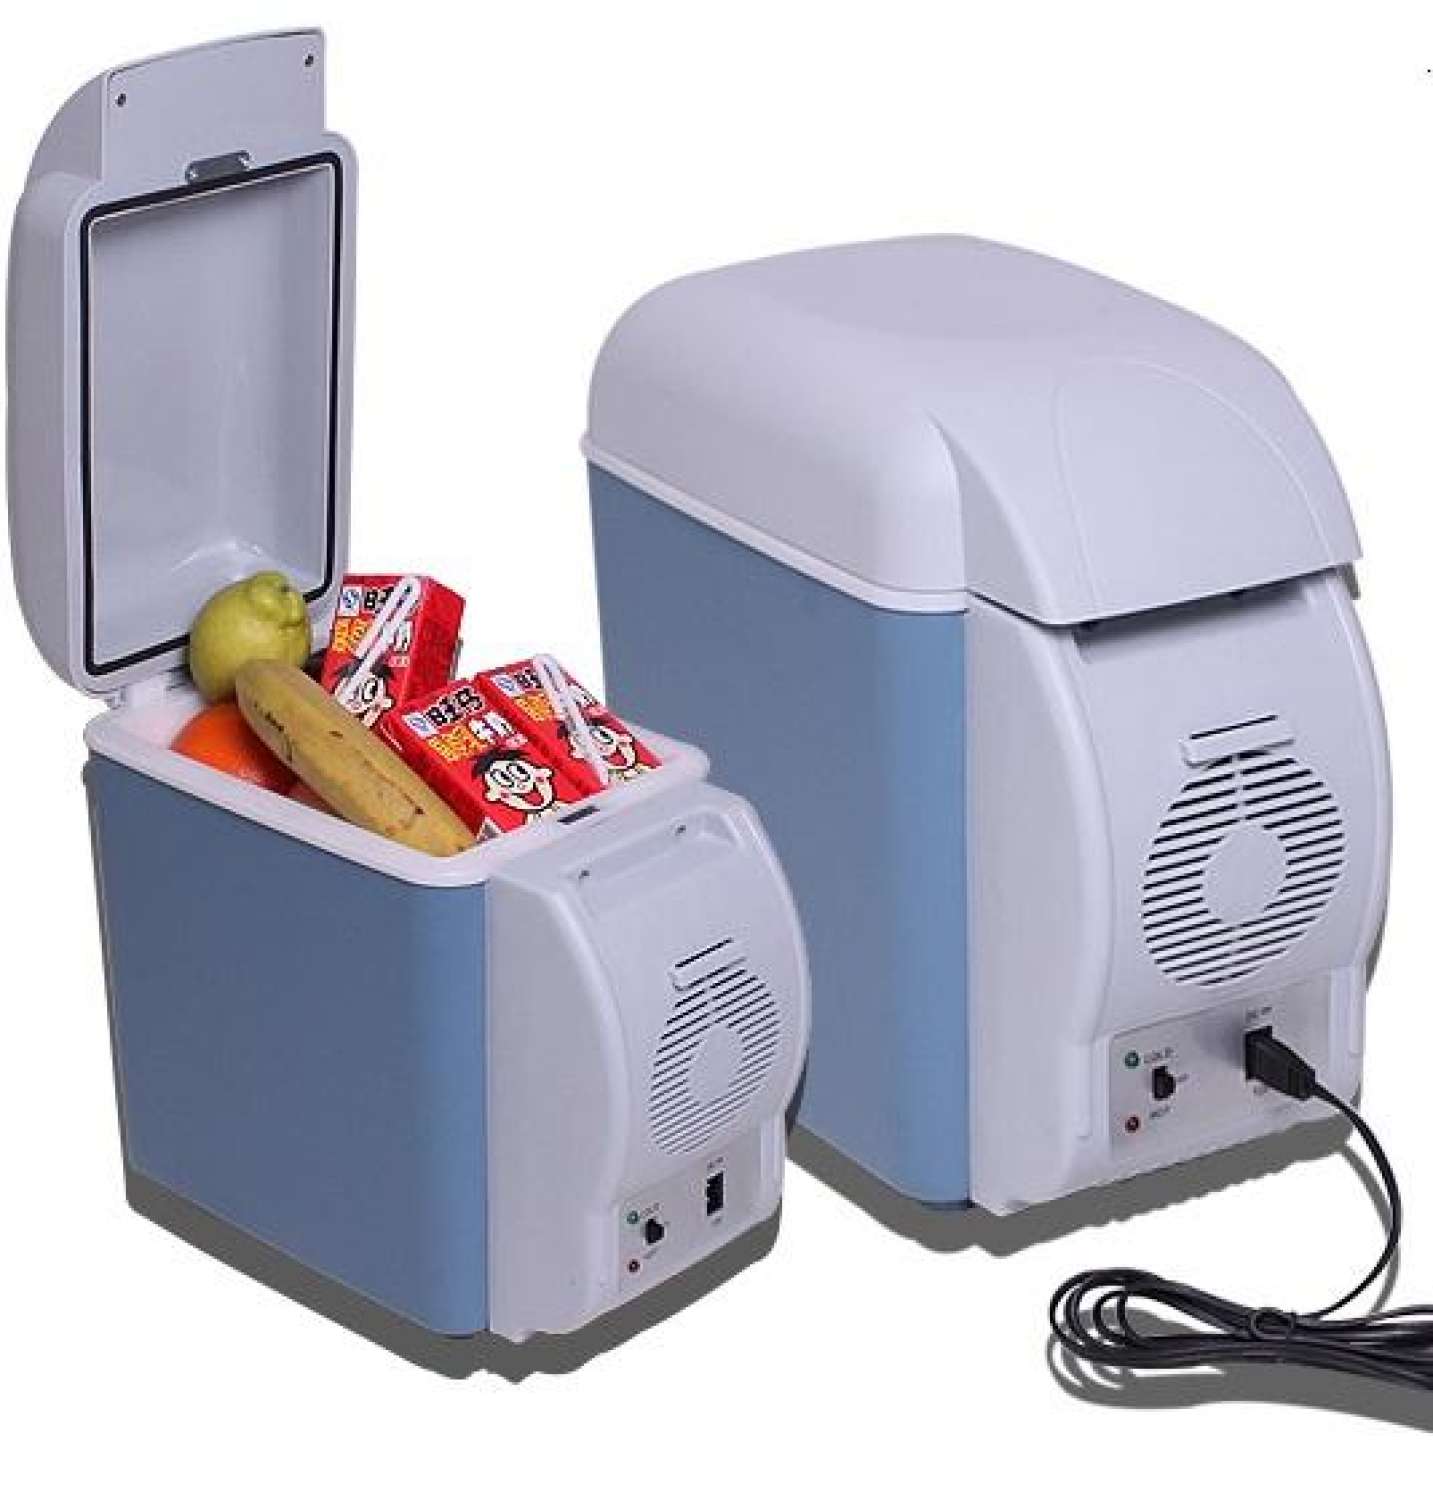 HCMTủ Lạnh Mini Tủ Lạnh Xe Hơi 7.5 Lít Tiện Dụng Trên Ô Tô Khi Đi Xa và